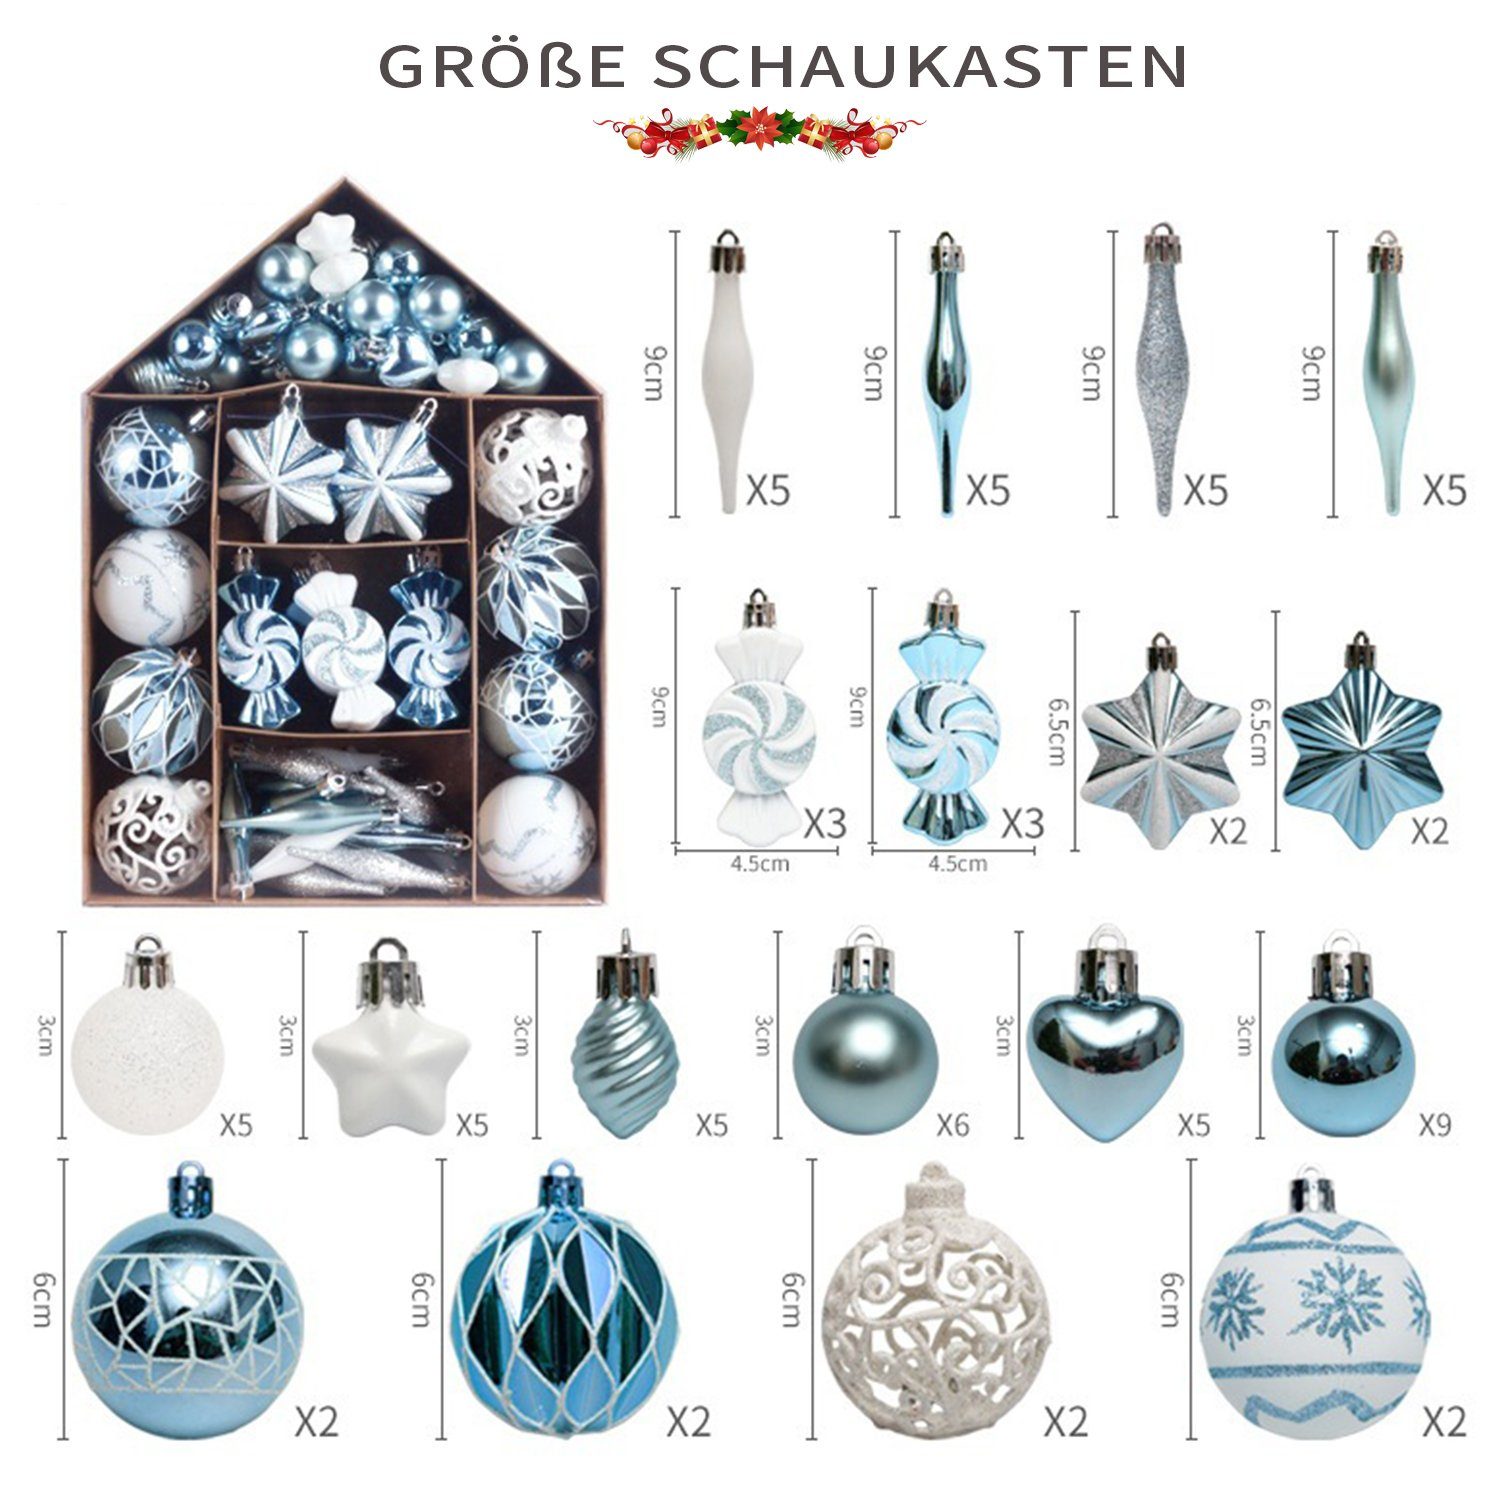 73tlg MAGICSHE Hellblau/Weiß Ornamente-Set Weihnachtsdeko Weihnachtsbaumkugel